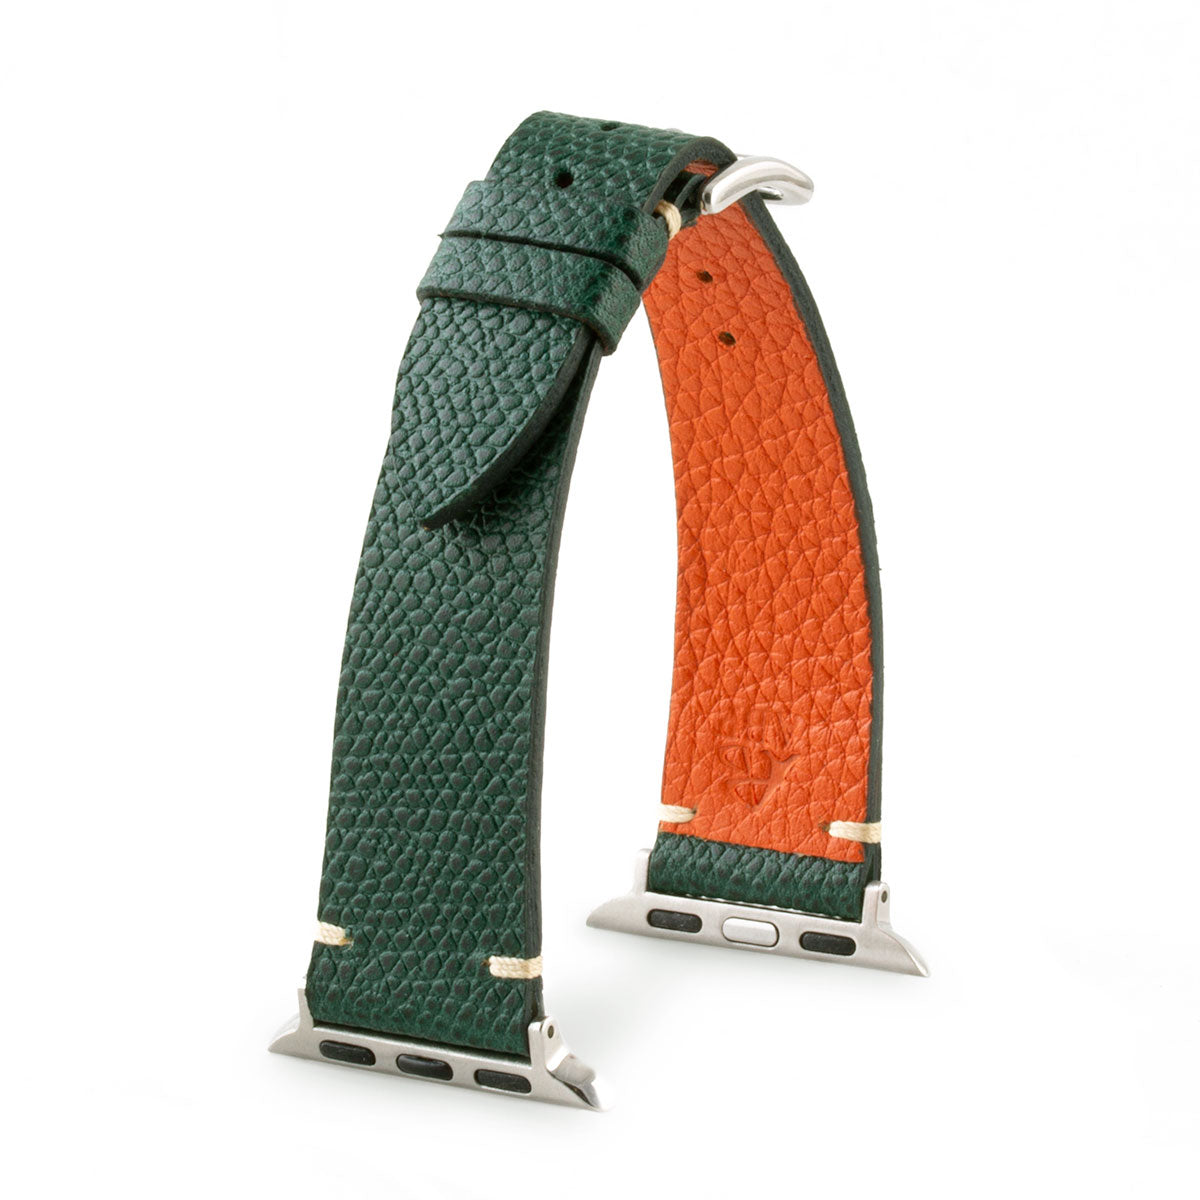 Bracelet Apple Watch strap Tribute to Hermès veau grainé grained calf vert green